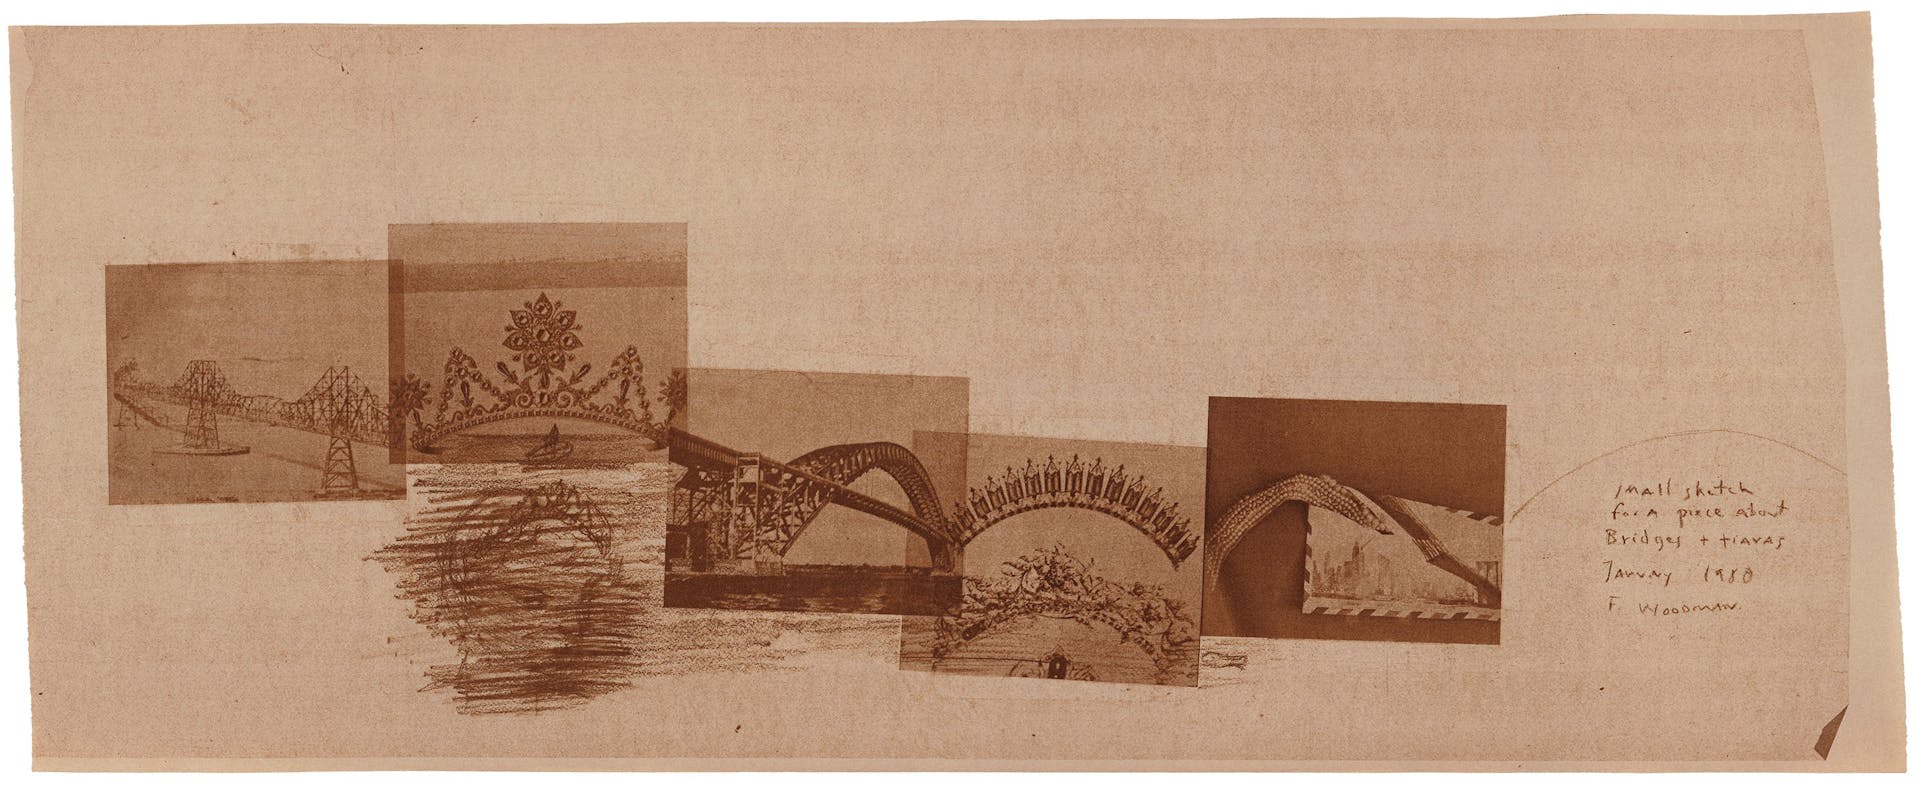 De Amerikaanse fotograaf Francesca Woodman experimenteerde rond 1980 met de diazotypietechniek. Deze collage maakte ze door een schets te kopiëren en die te combineren met foto’s van bruggen en tiara’s. Het transparant van de schets is dui… 